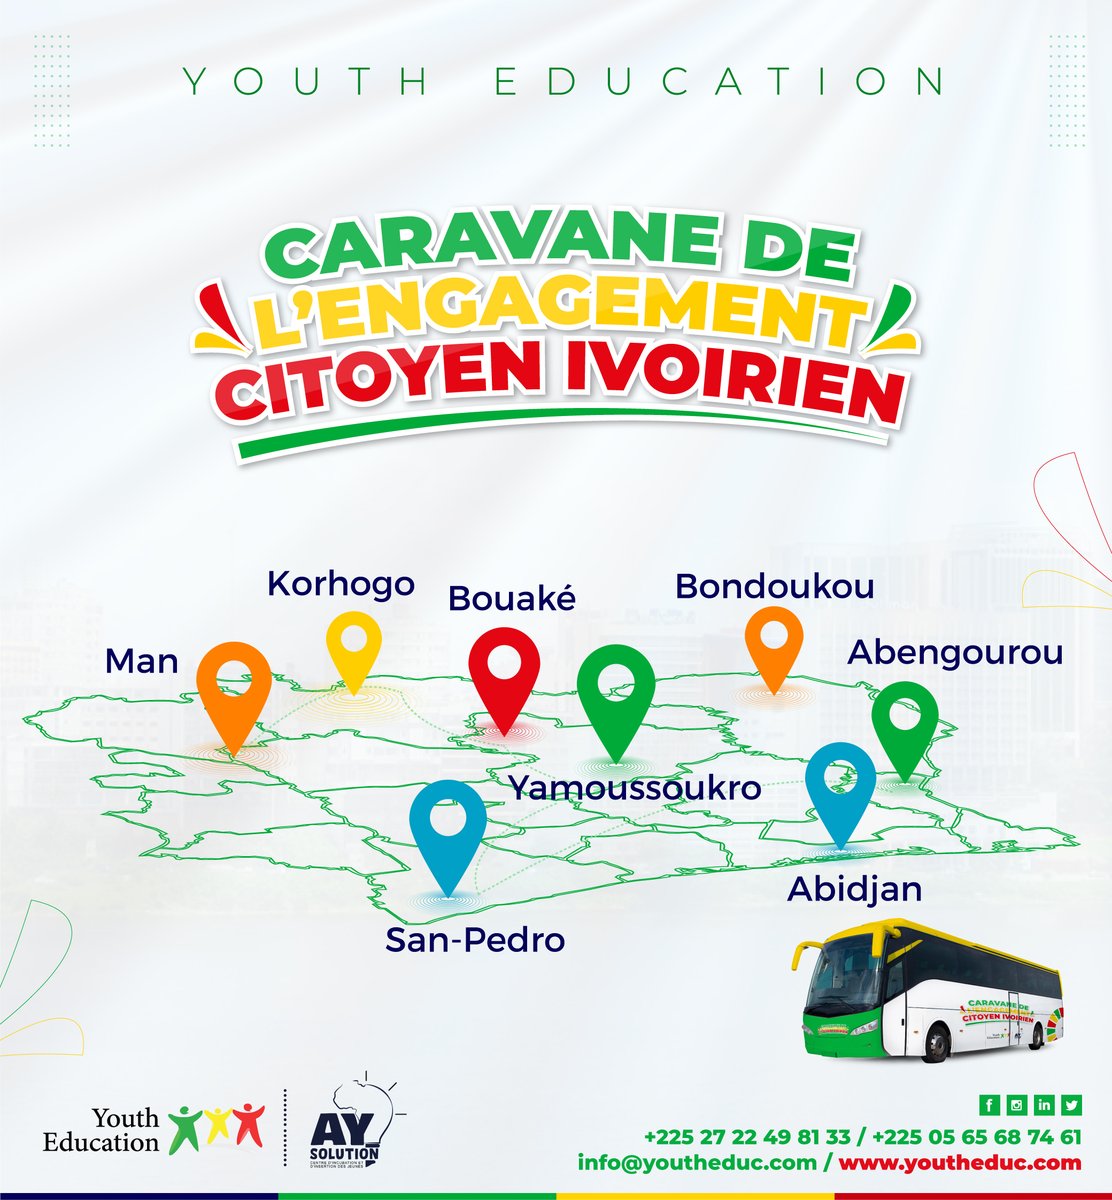 𝗟𝗔 𝗖𝗔𝗥𝗔𝗩𝗔𝗡𝗘 𝗗𝗘 𝗟'𝗘𝗡𝗚𝗔𝗚𝗘𝗠𝗘𝗡𝗧 𝗖𝗜𝗧𝗢𝗬𝗘𝗡 𝗜𝗩𝗢𝗜𝗥𝗜𝗘𝗡

Participez à la Caravane de l'engagement Citoyen Ivoirien.

Toutes les informations ici : urlz.fr/qADW

Inscrivez vous ici : urlz.fr/qABq

#YouthEducation